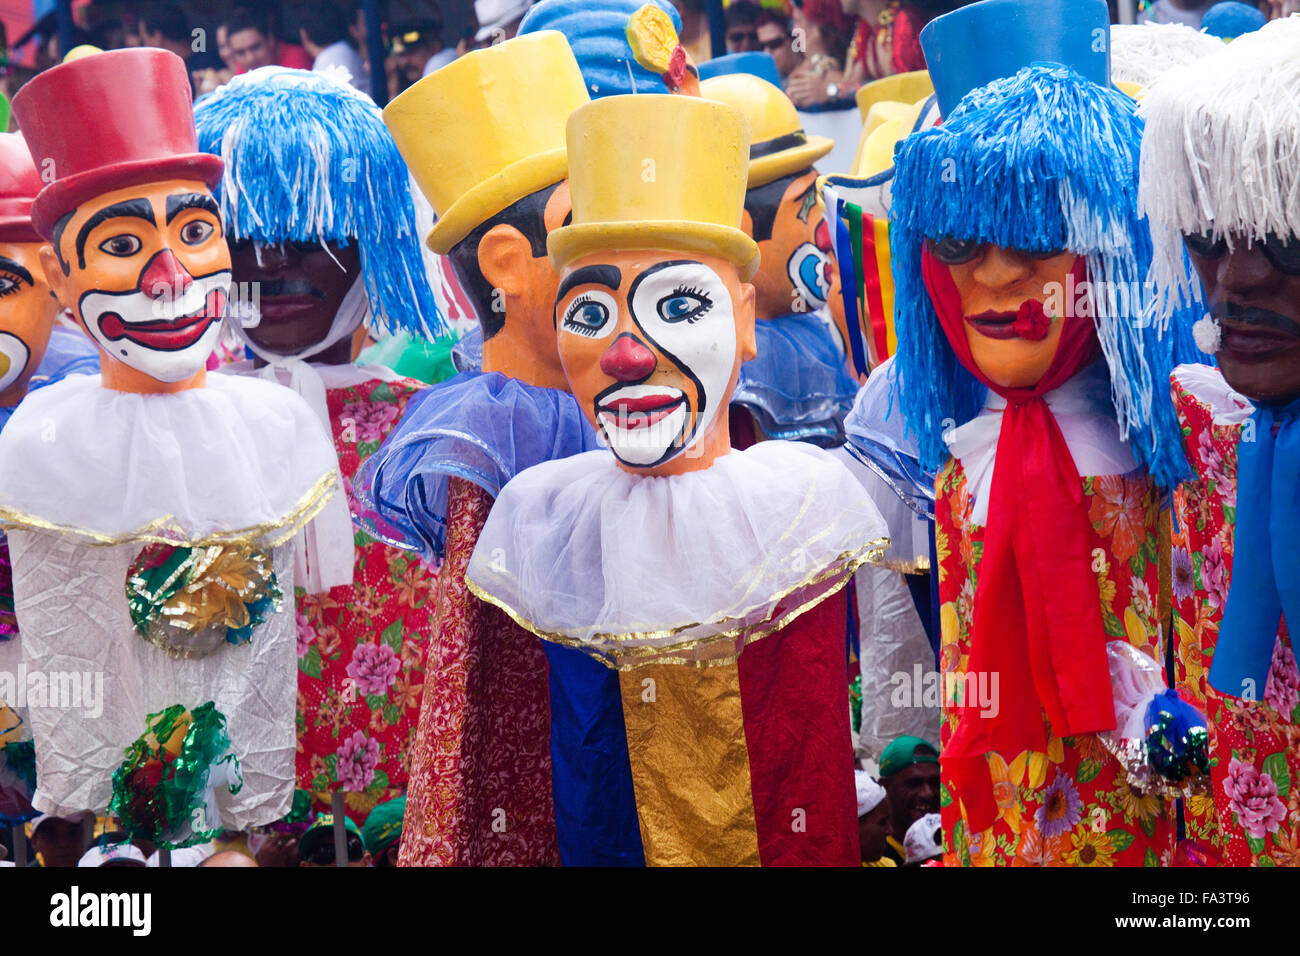 Des marionnettes géantes carnival à Olinda Pernambuco, nord-est du Brésil Banque D'Images